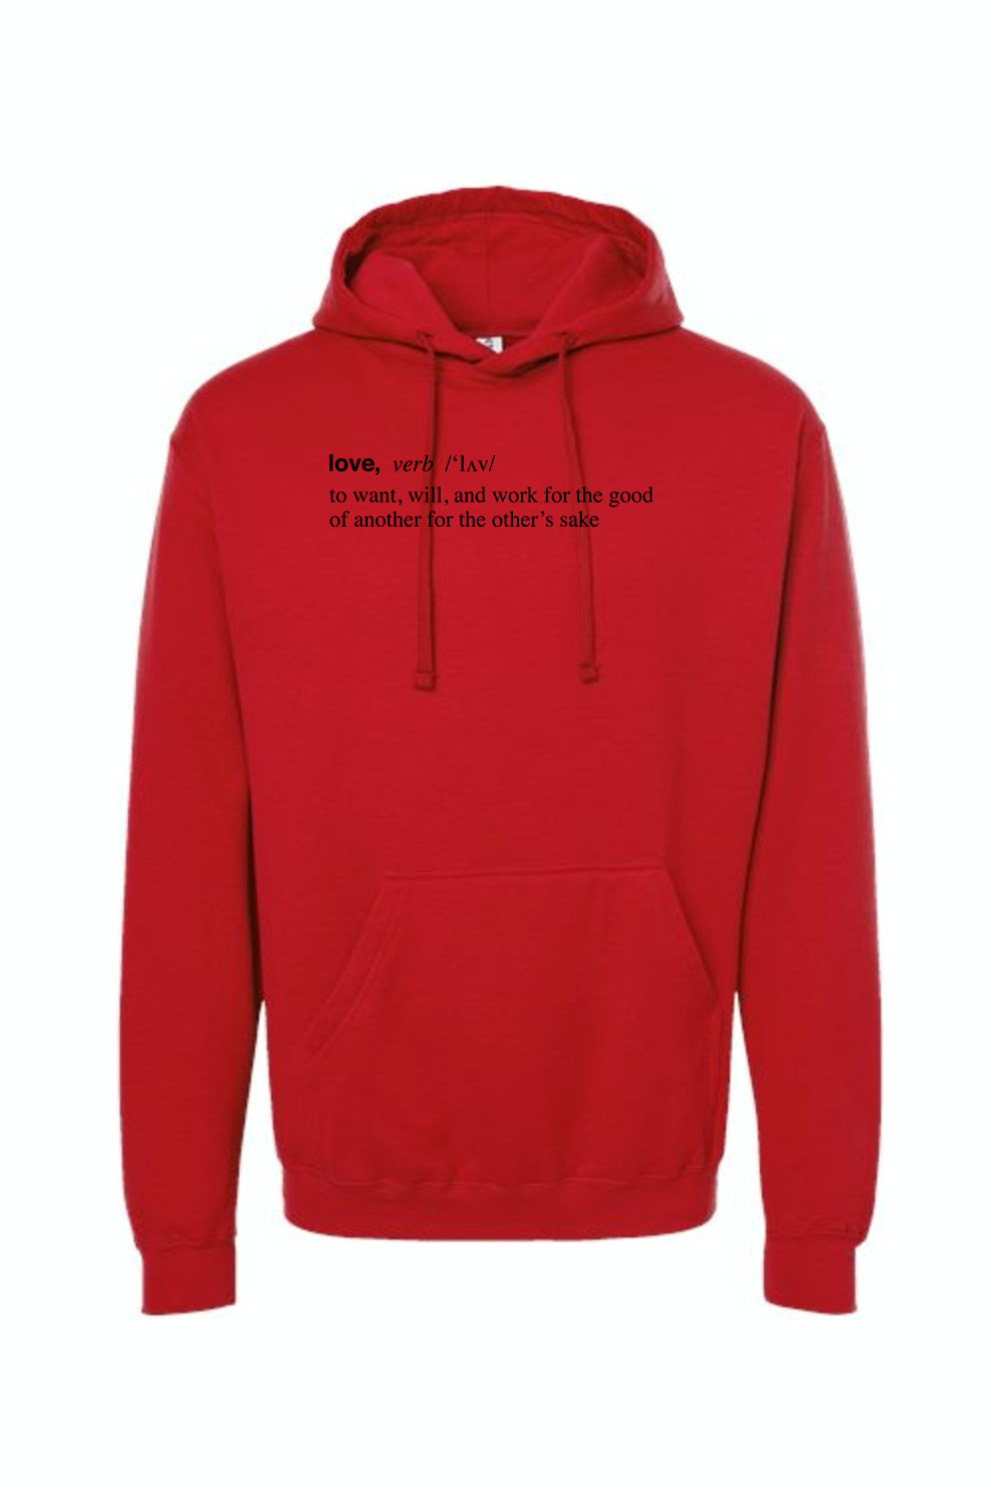 Love is a Verb - Hoodie Sweatshirt